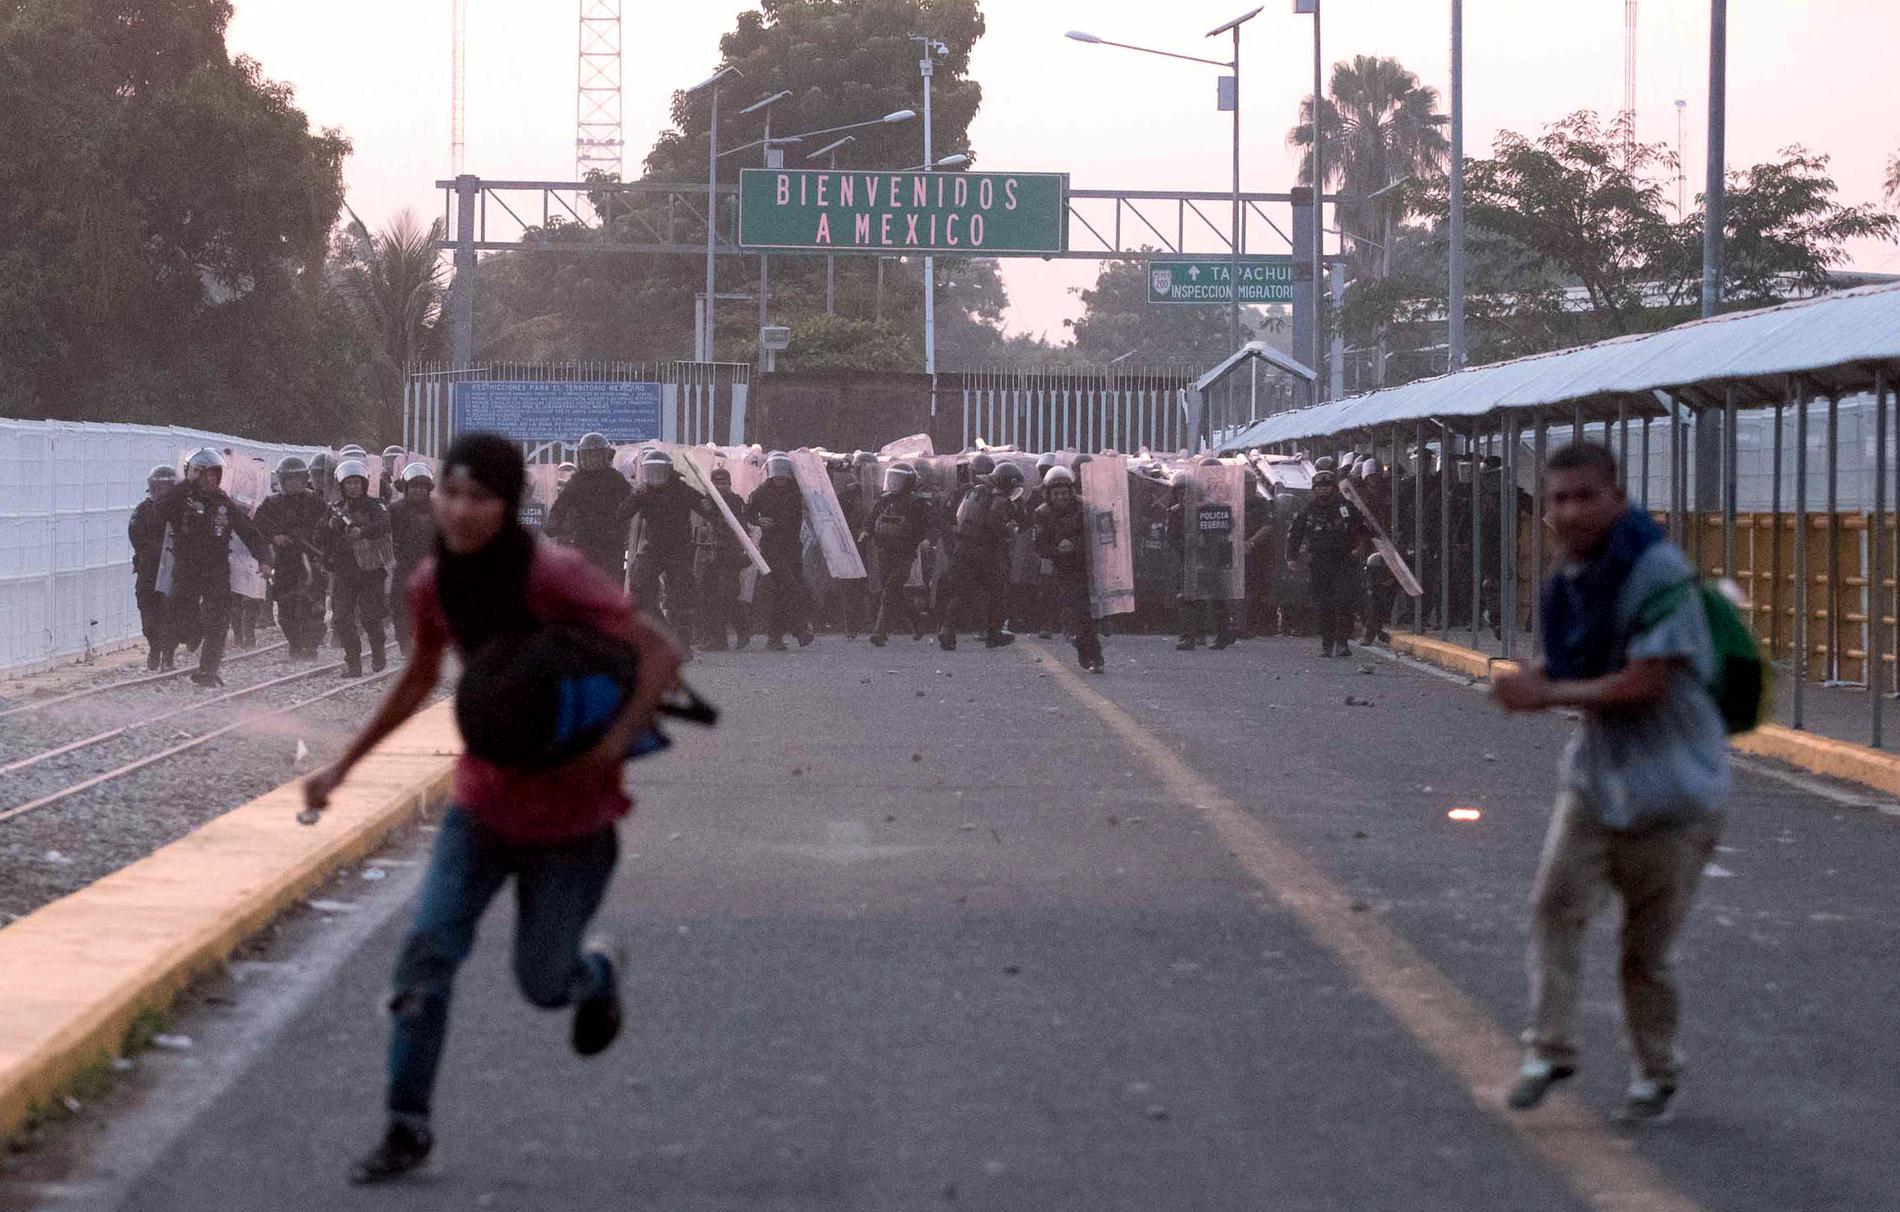 Migranter flyr från mexikanska poliser vid en sammandrabbning på en bro som binder samman Mexiko och Guatemala.